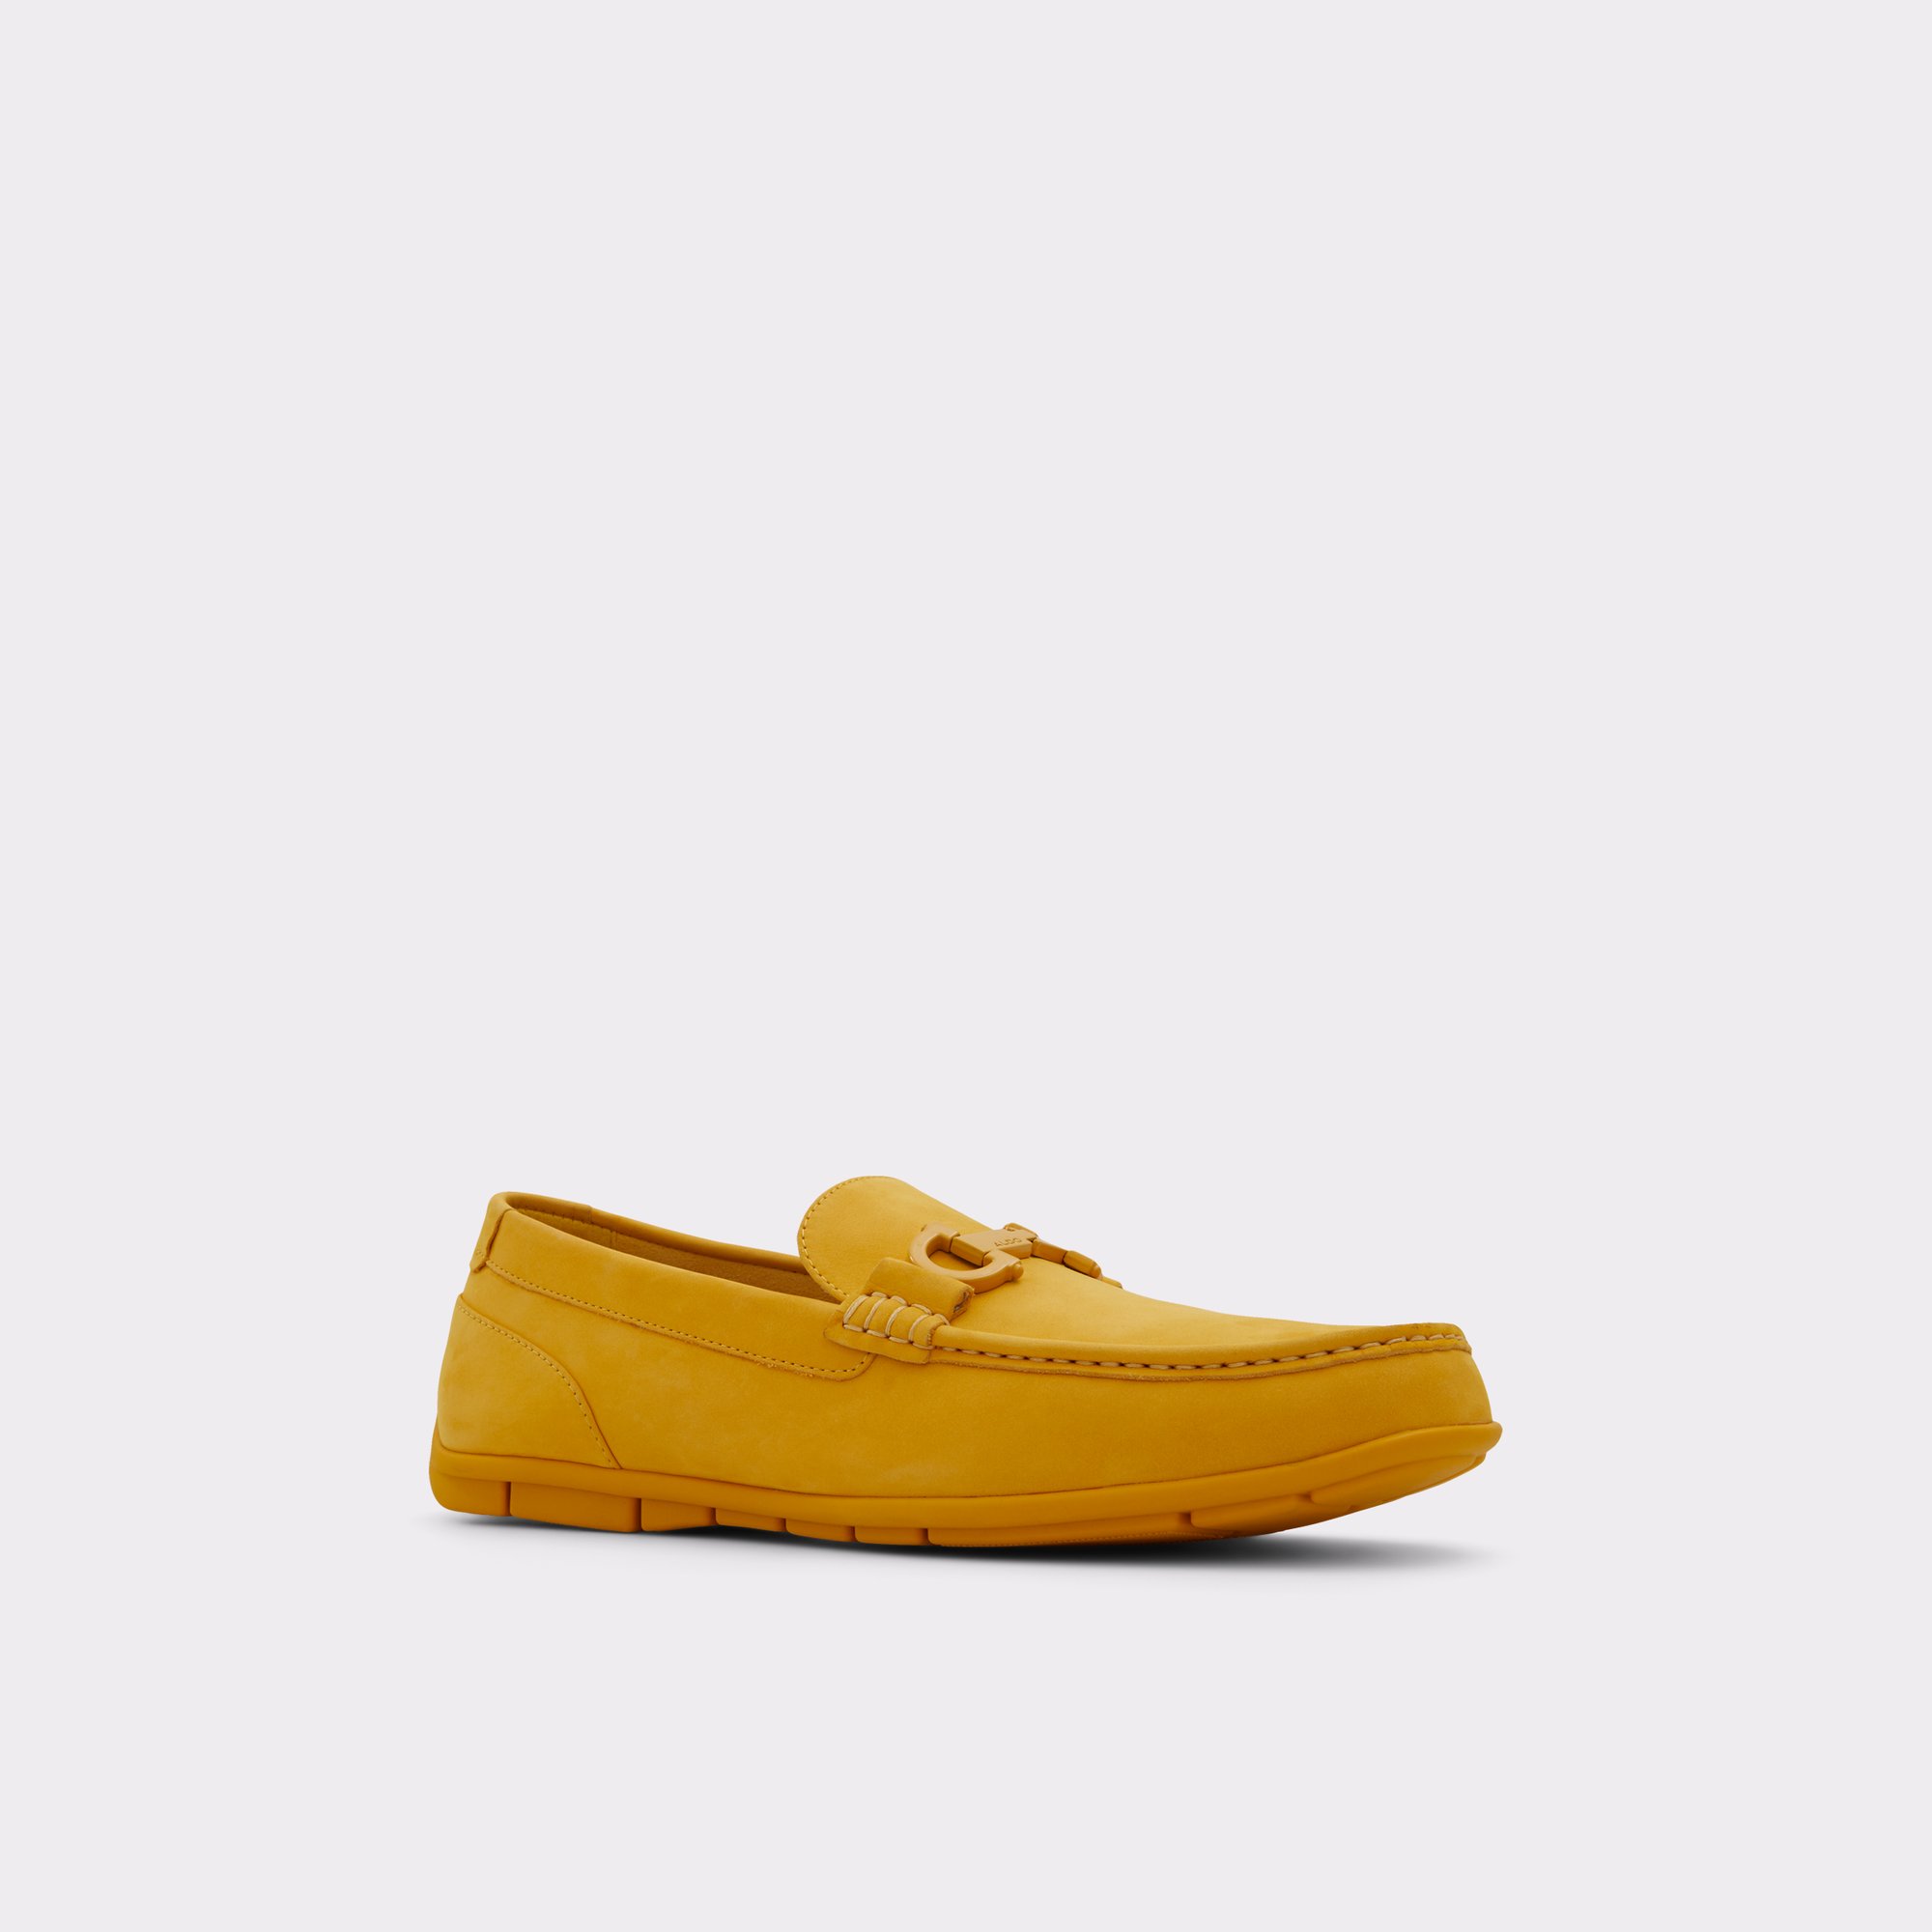 Orlovoflex Bright Yellow Men's Casual Shoes | ALDO Canada